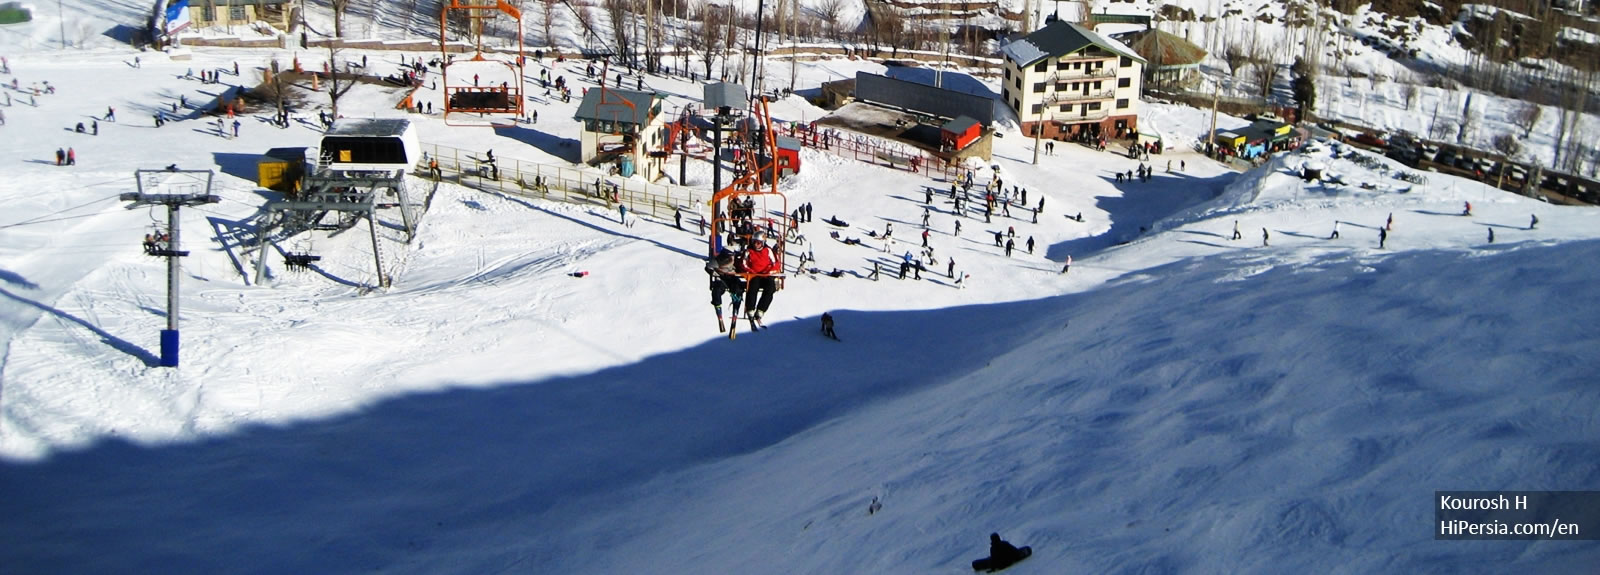 Darbandsar Ski Resort